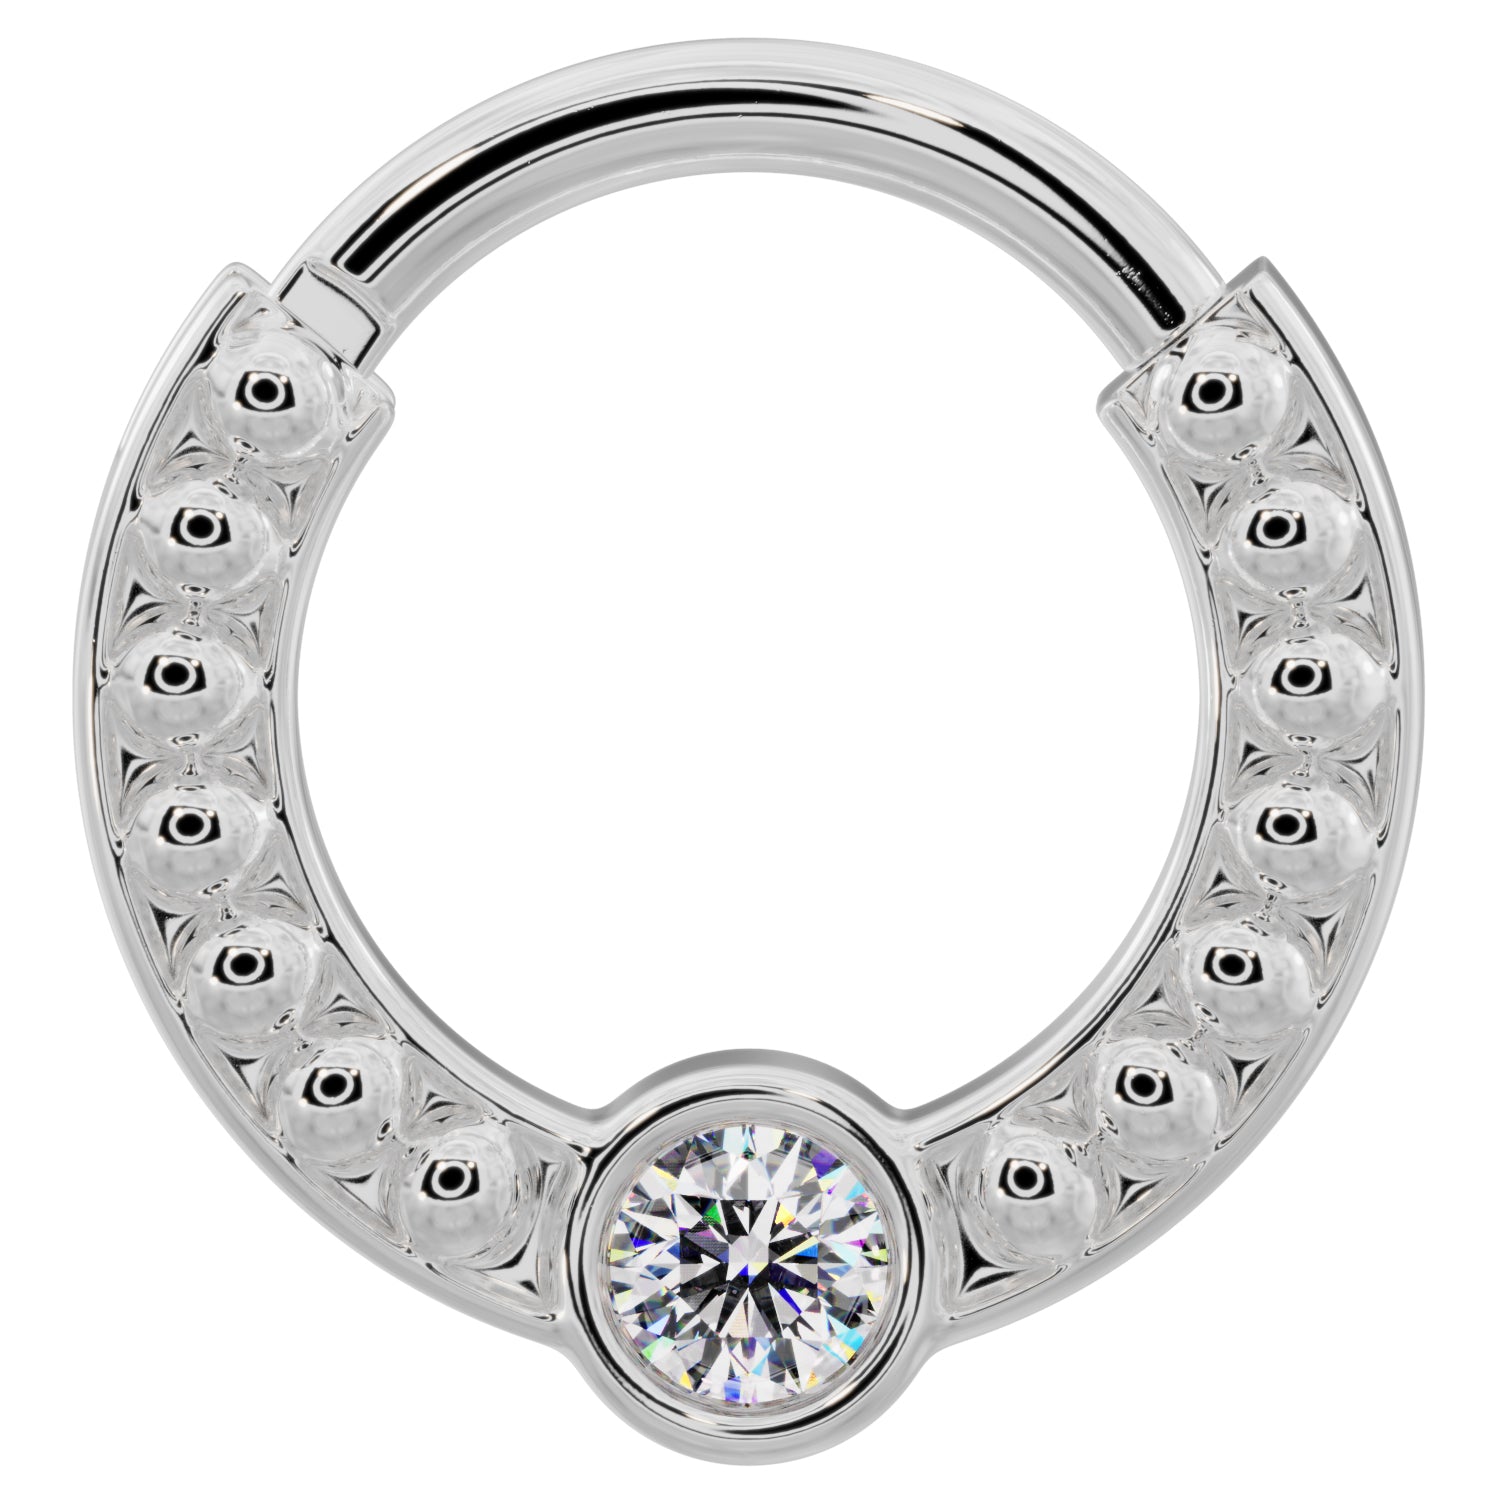 Diamond Bezel Channel-Set Dome Beads 14k Gold Clicker Ring-14K White Gold   16G (1.2mm)   3 8